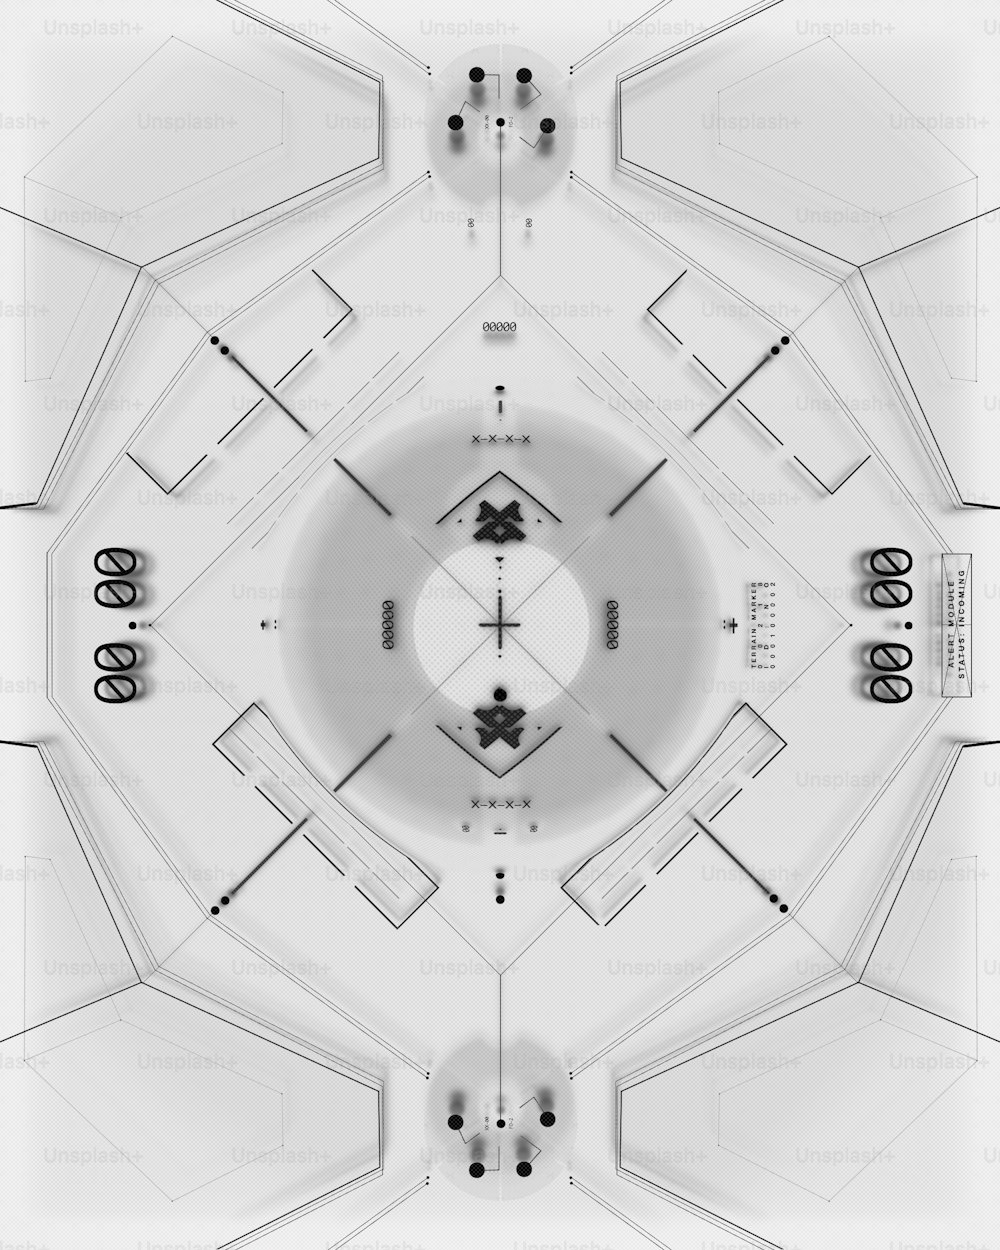 Una foto en blanco y negro de una estructura circular